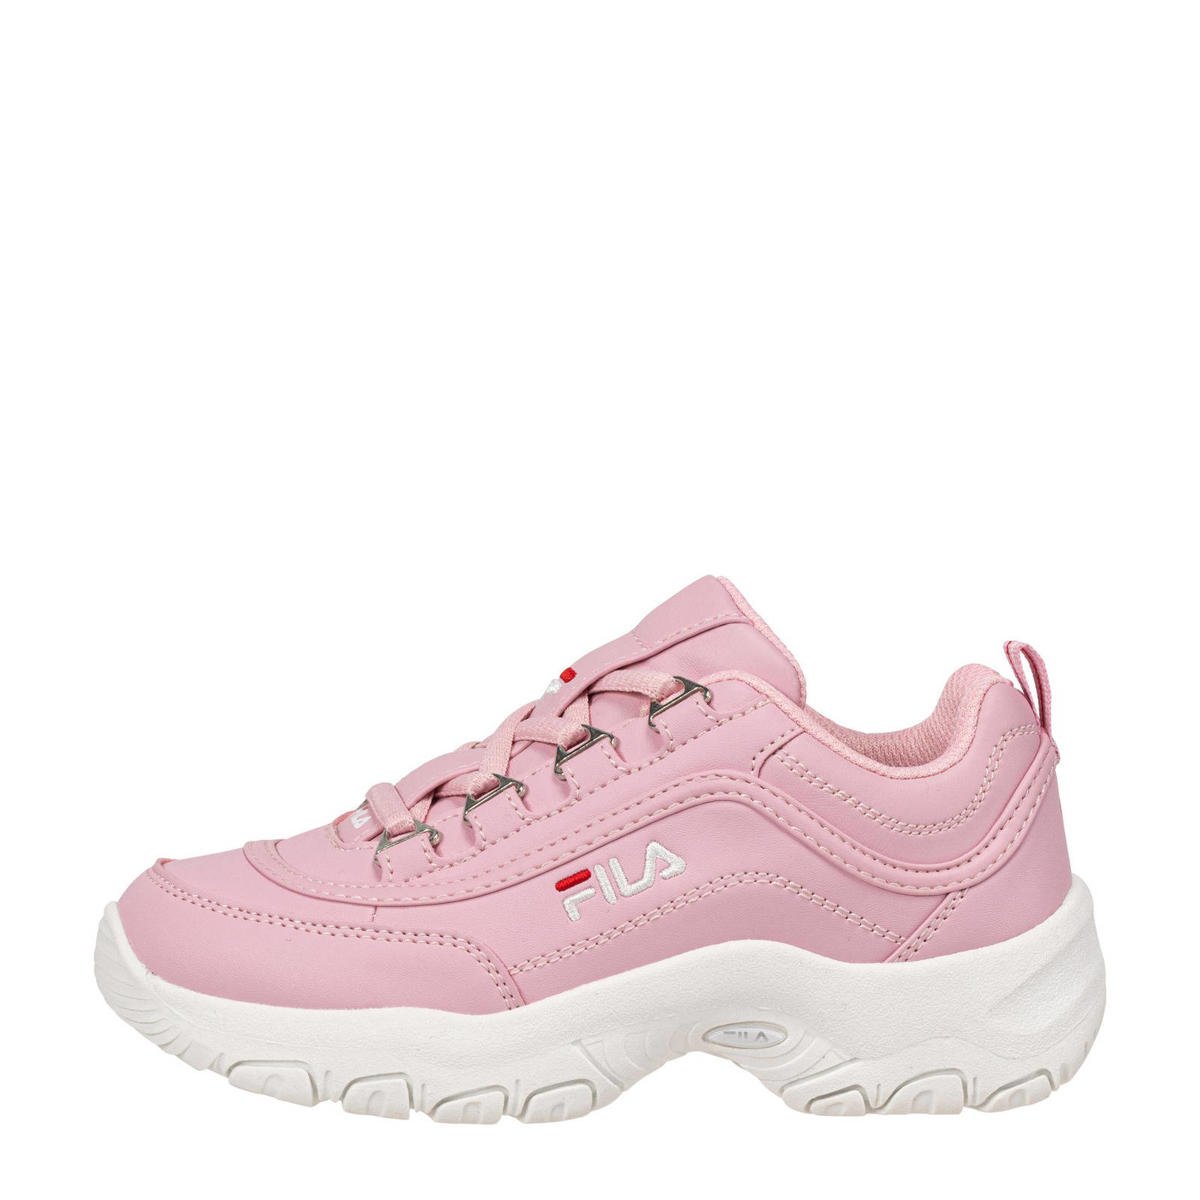 vloeistof Gebruikelijk mijn Fila Strada Low sneakers roze/wit | kleertjes.com